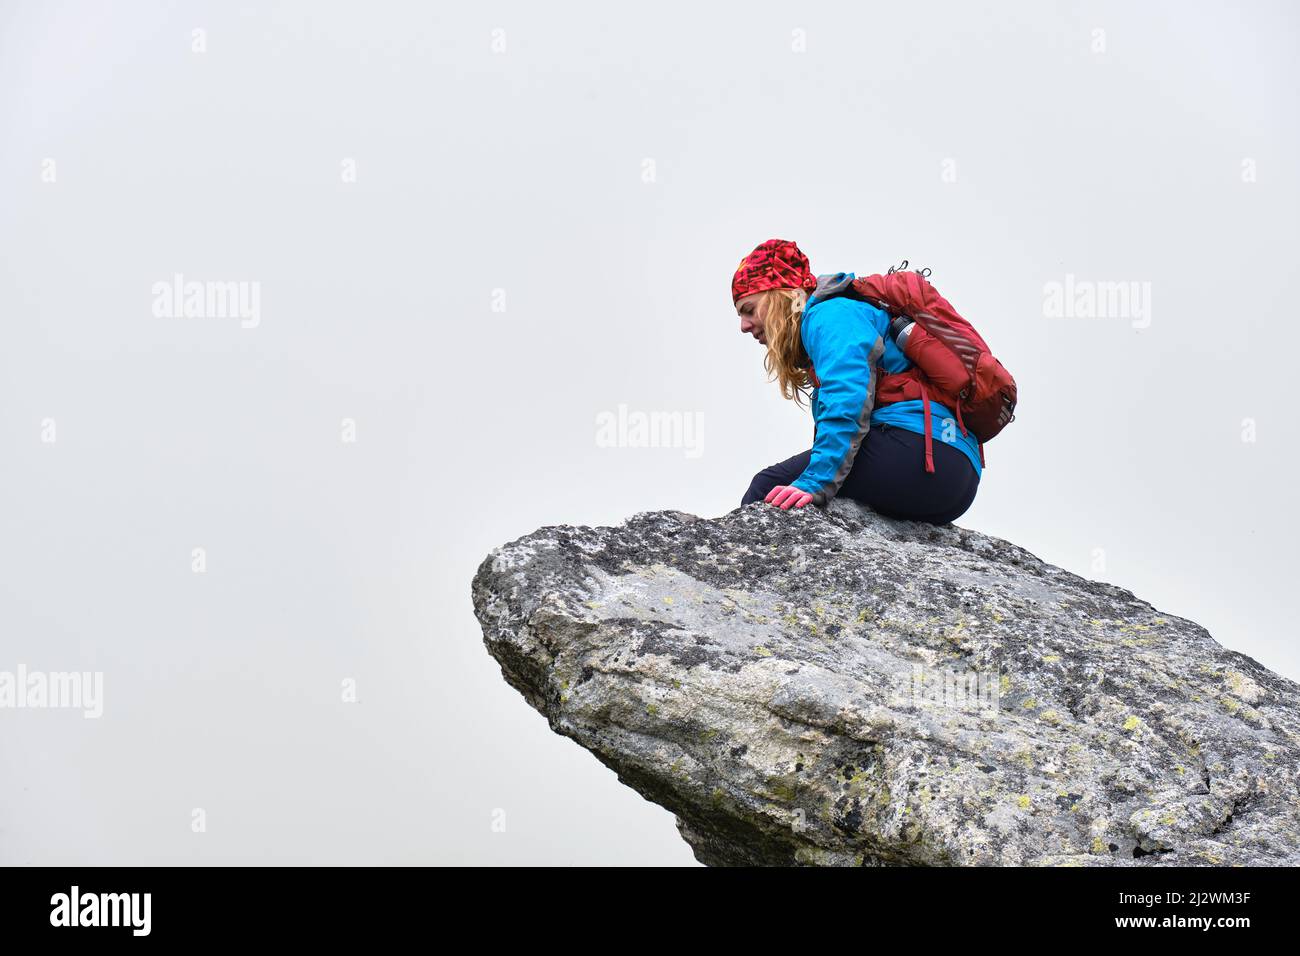 Femme randonneur avec sac à dos rouge se trouve au bord d'une falaise et regarde vers le bas, isolée par le brouillard. Randonnée dans les montagnes des Hautes Tatras en Slovaquie. Banque D'Images